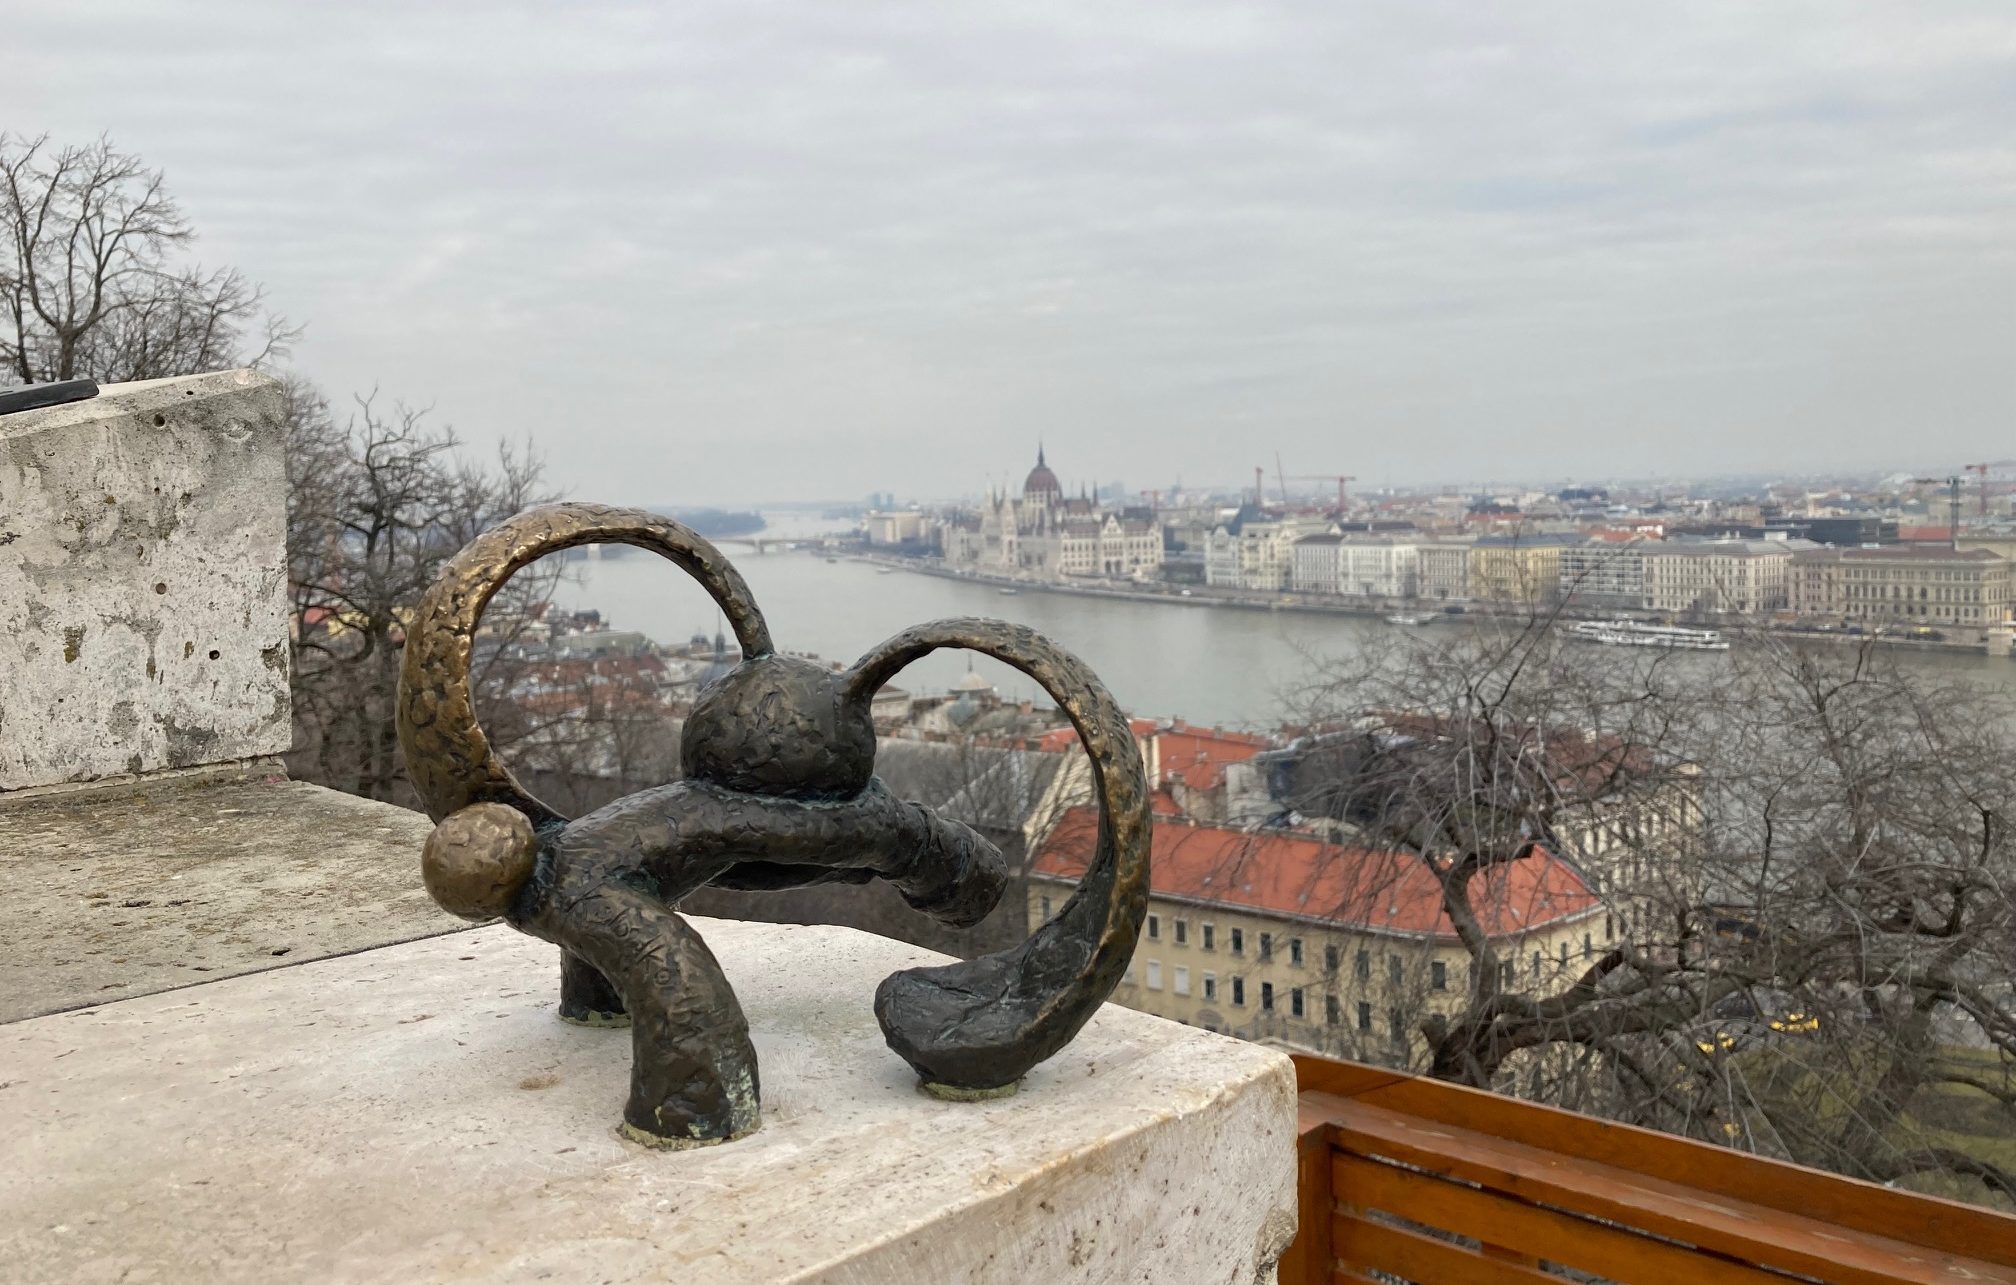 Budapest legapróbb mesehősei: 7 miniszobor, ami városfelfedező sétára csábít